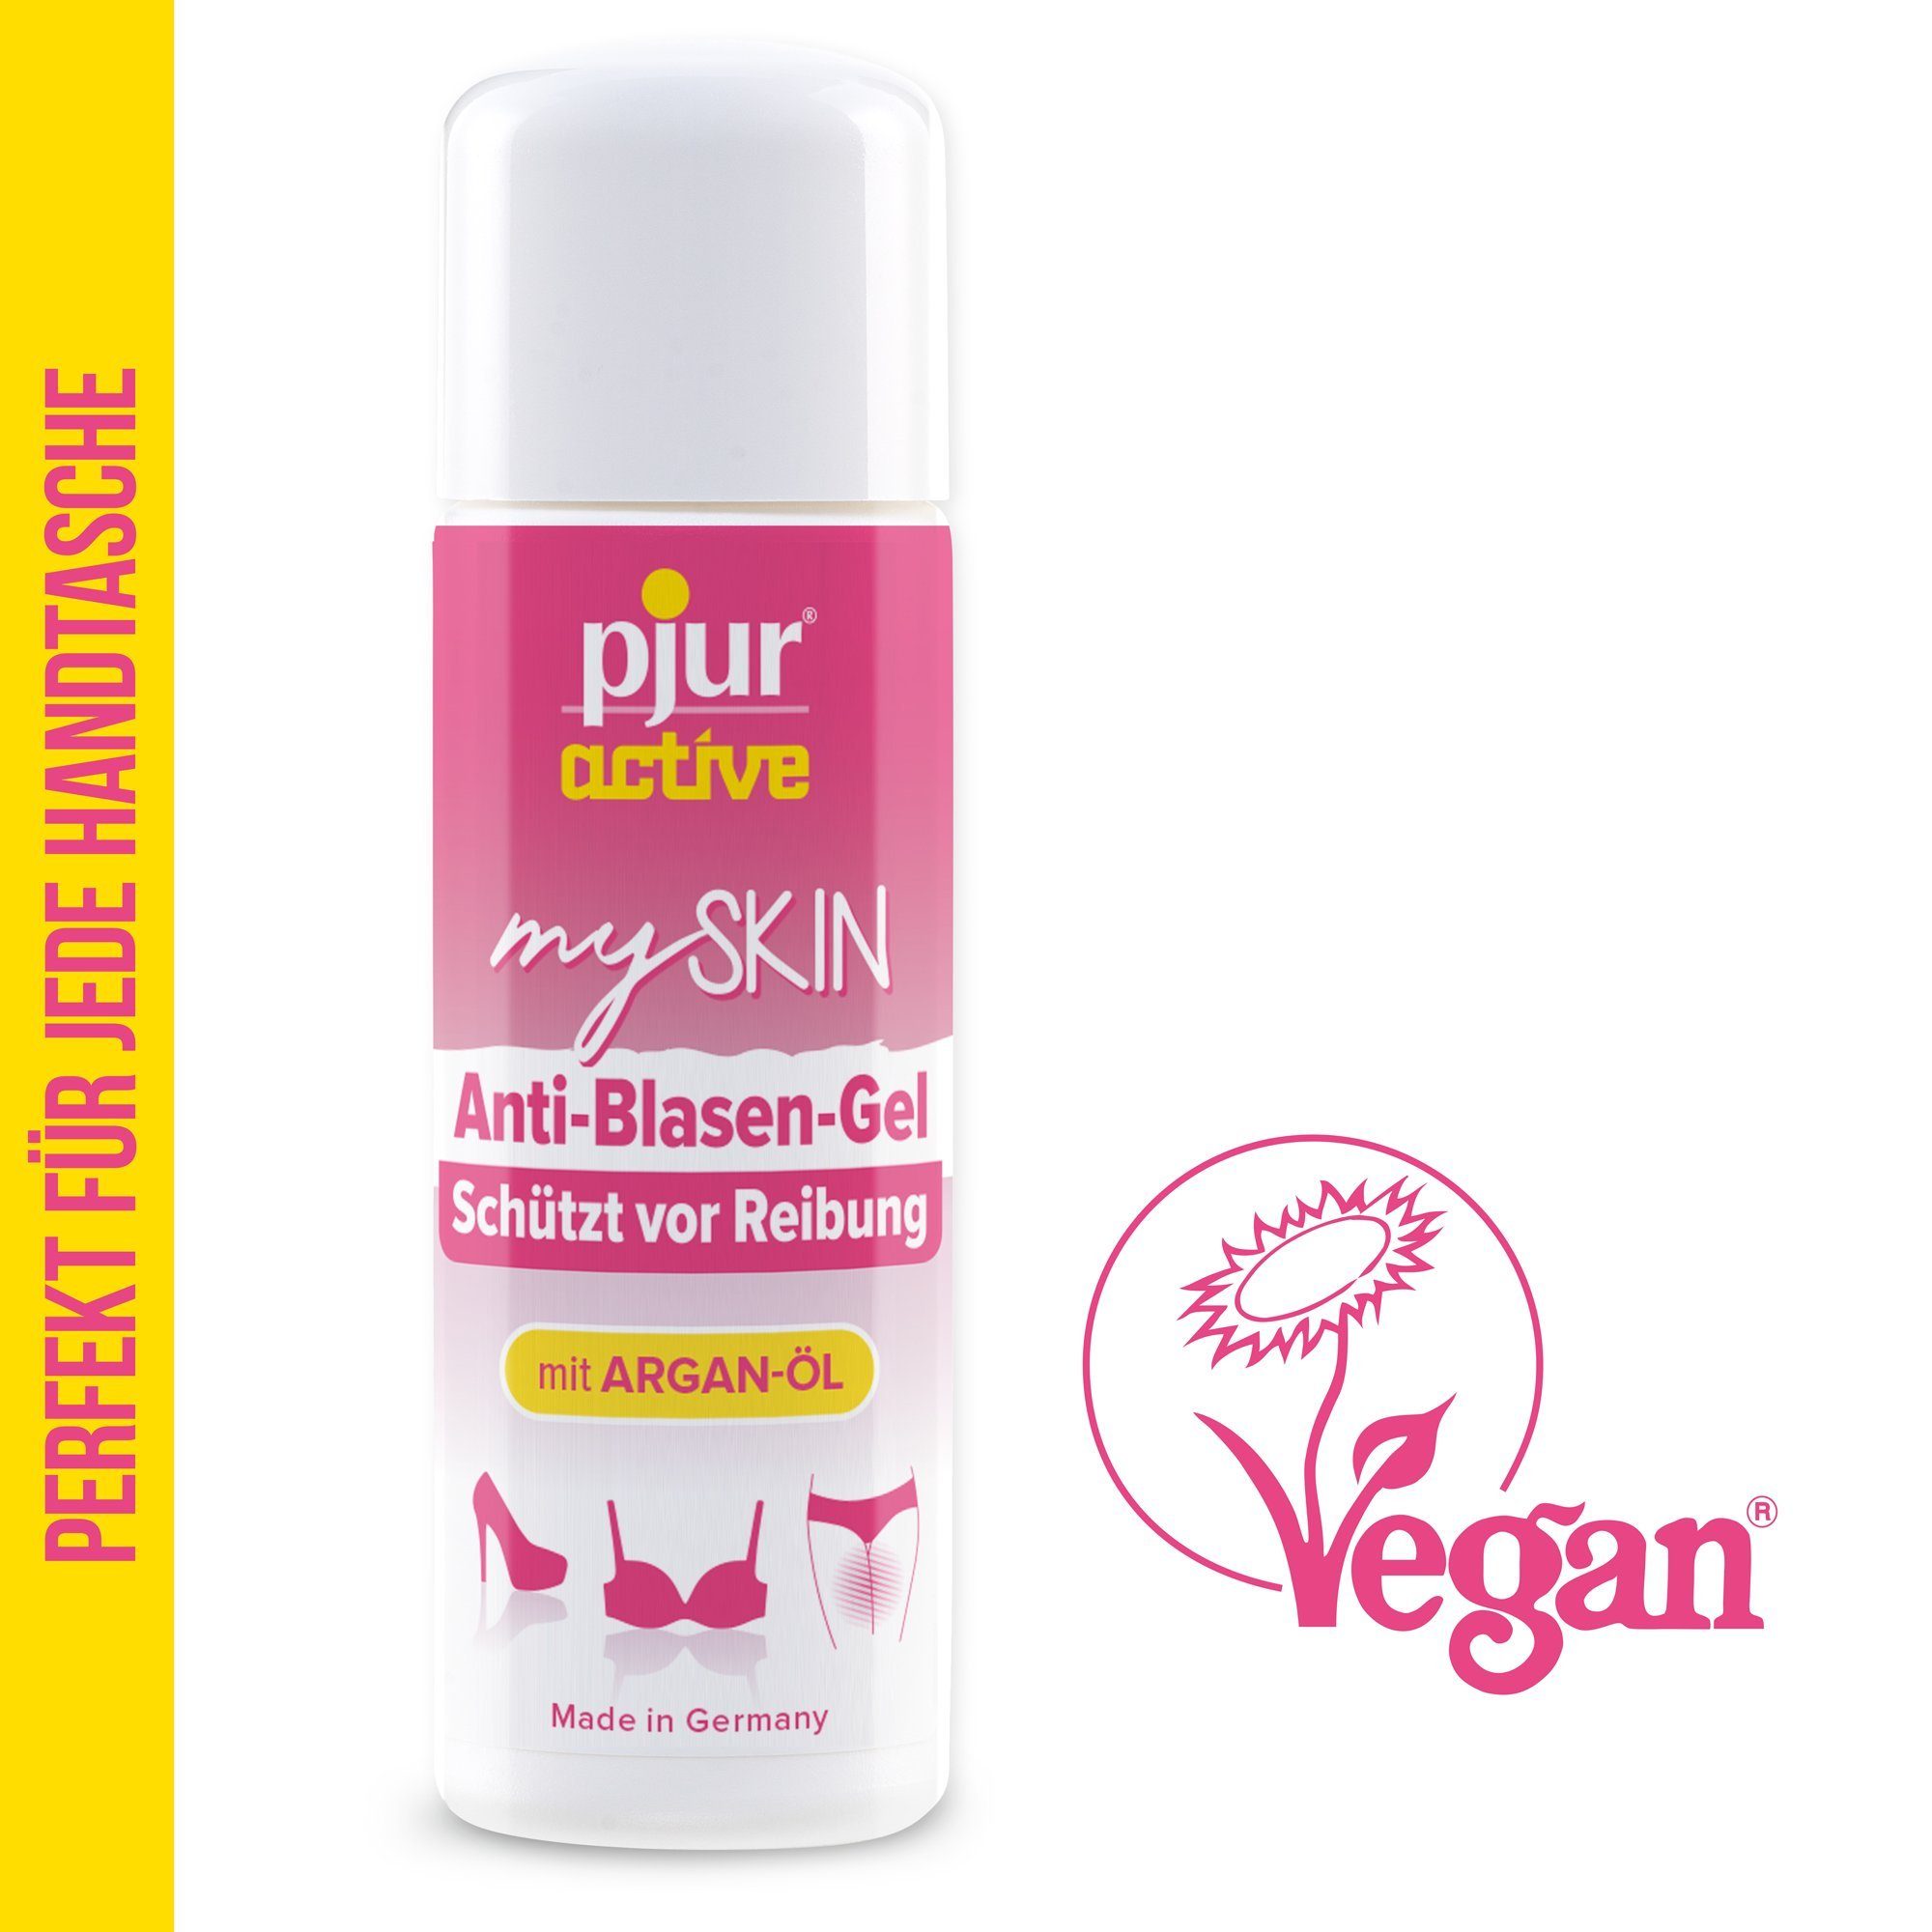 pjur Hautpflegegel pjuractive mySKIN 30ml - Anti-Blasen-Gel, gegen Reibung, mit Arganöl und Vitamin E - Vegan - Made in Germany